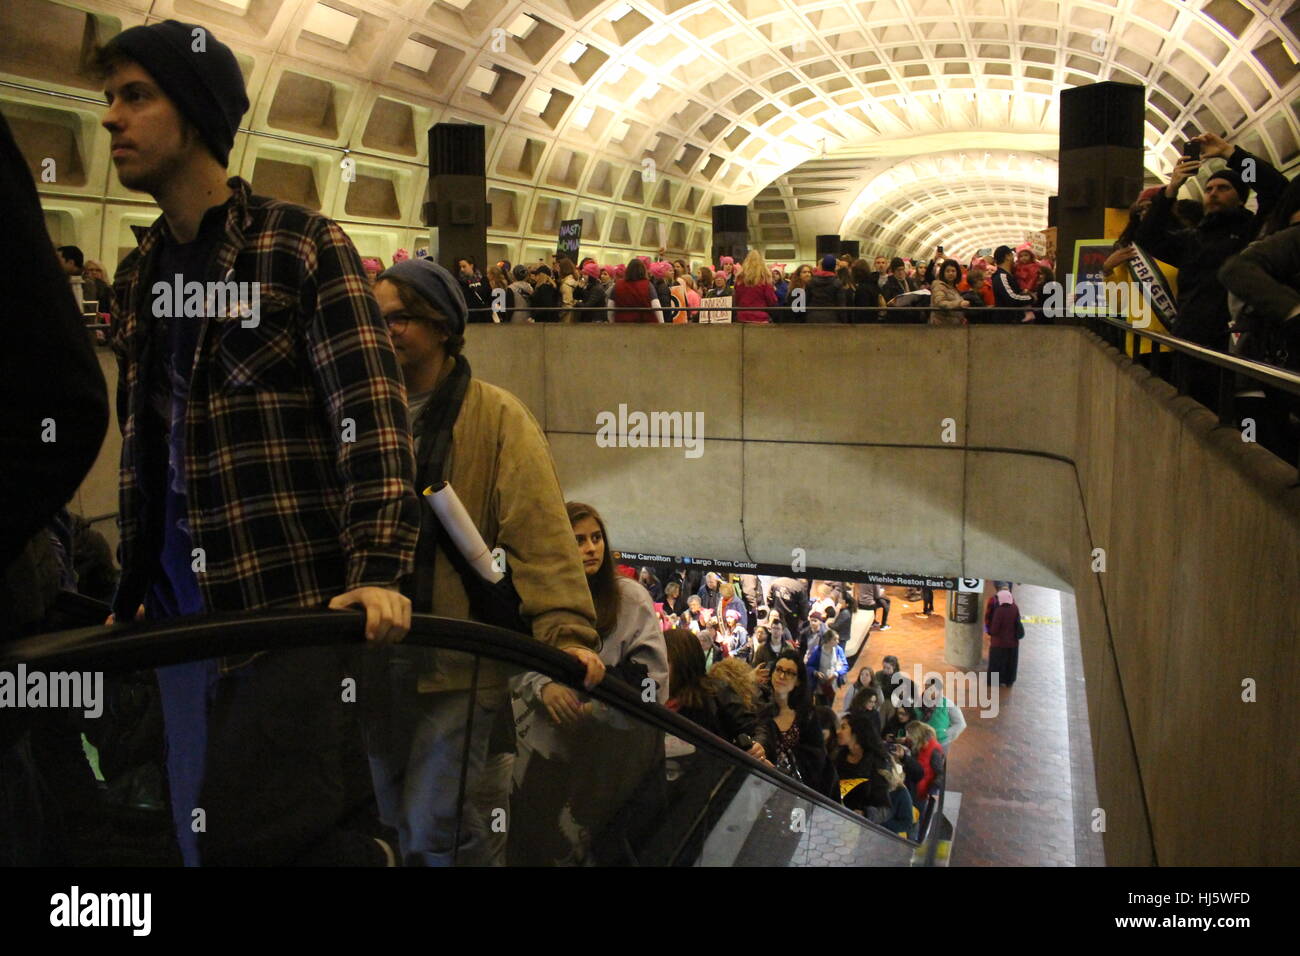 Distrikt von Columbia, USA. 21 Jan, 2017. Menschen verlassen Sie die U-Bahn im März zu verbinden. Stockfoto